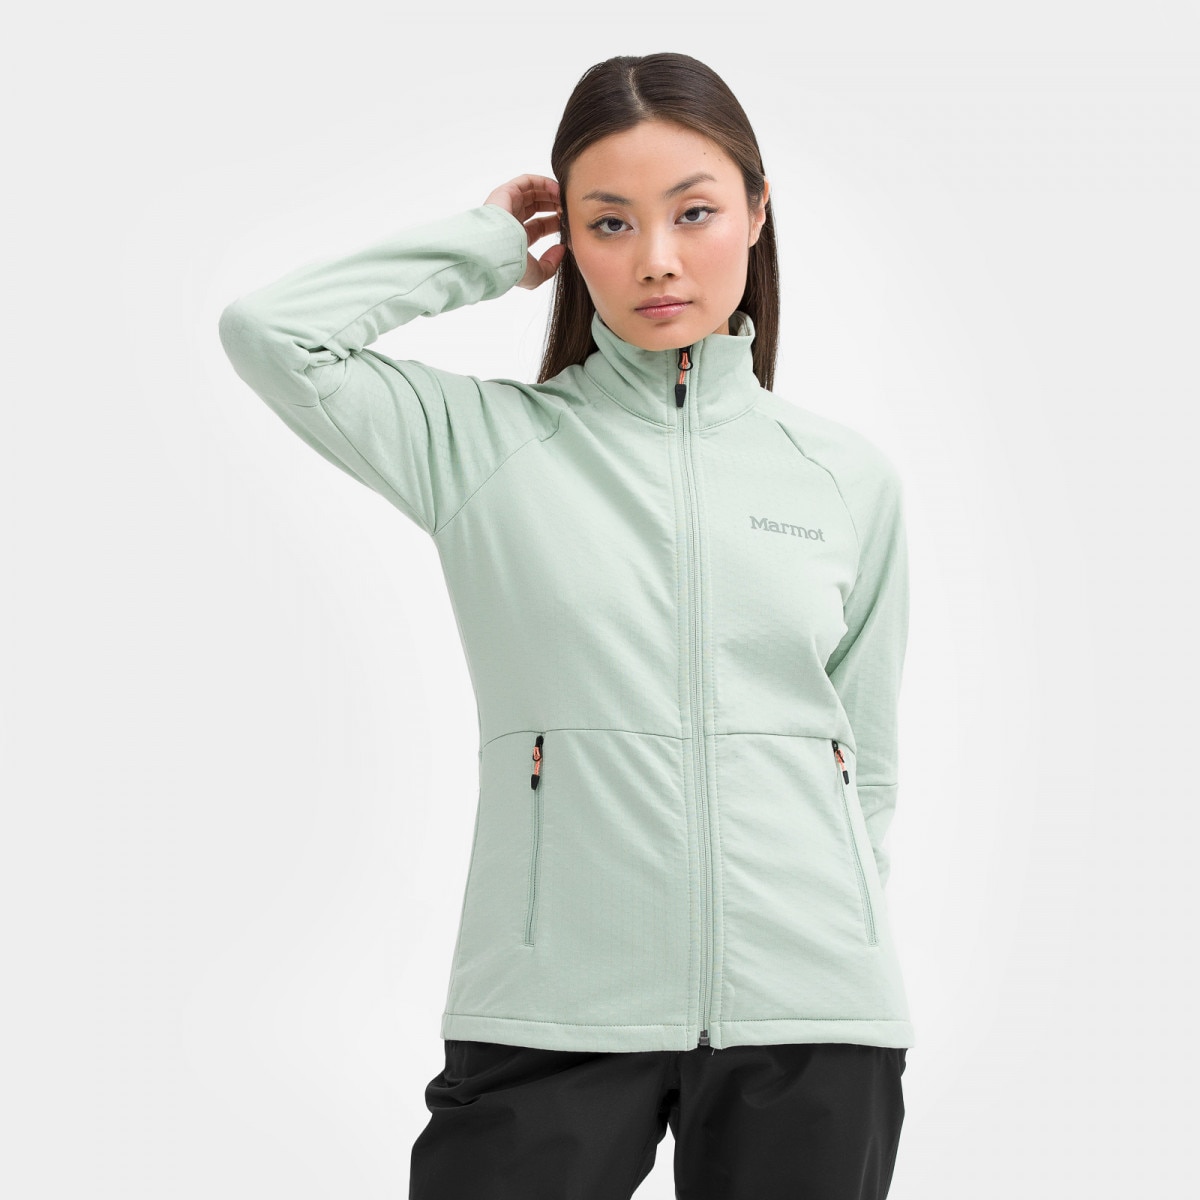 Damska bluza techniczna MARMOT Wm's Leconte Fleece Jacket - zielona